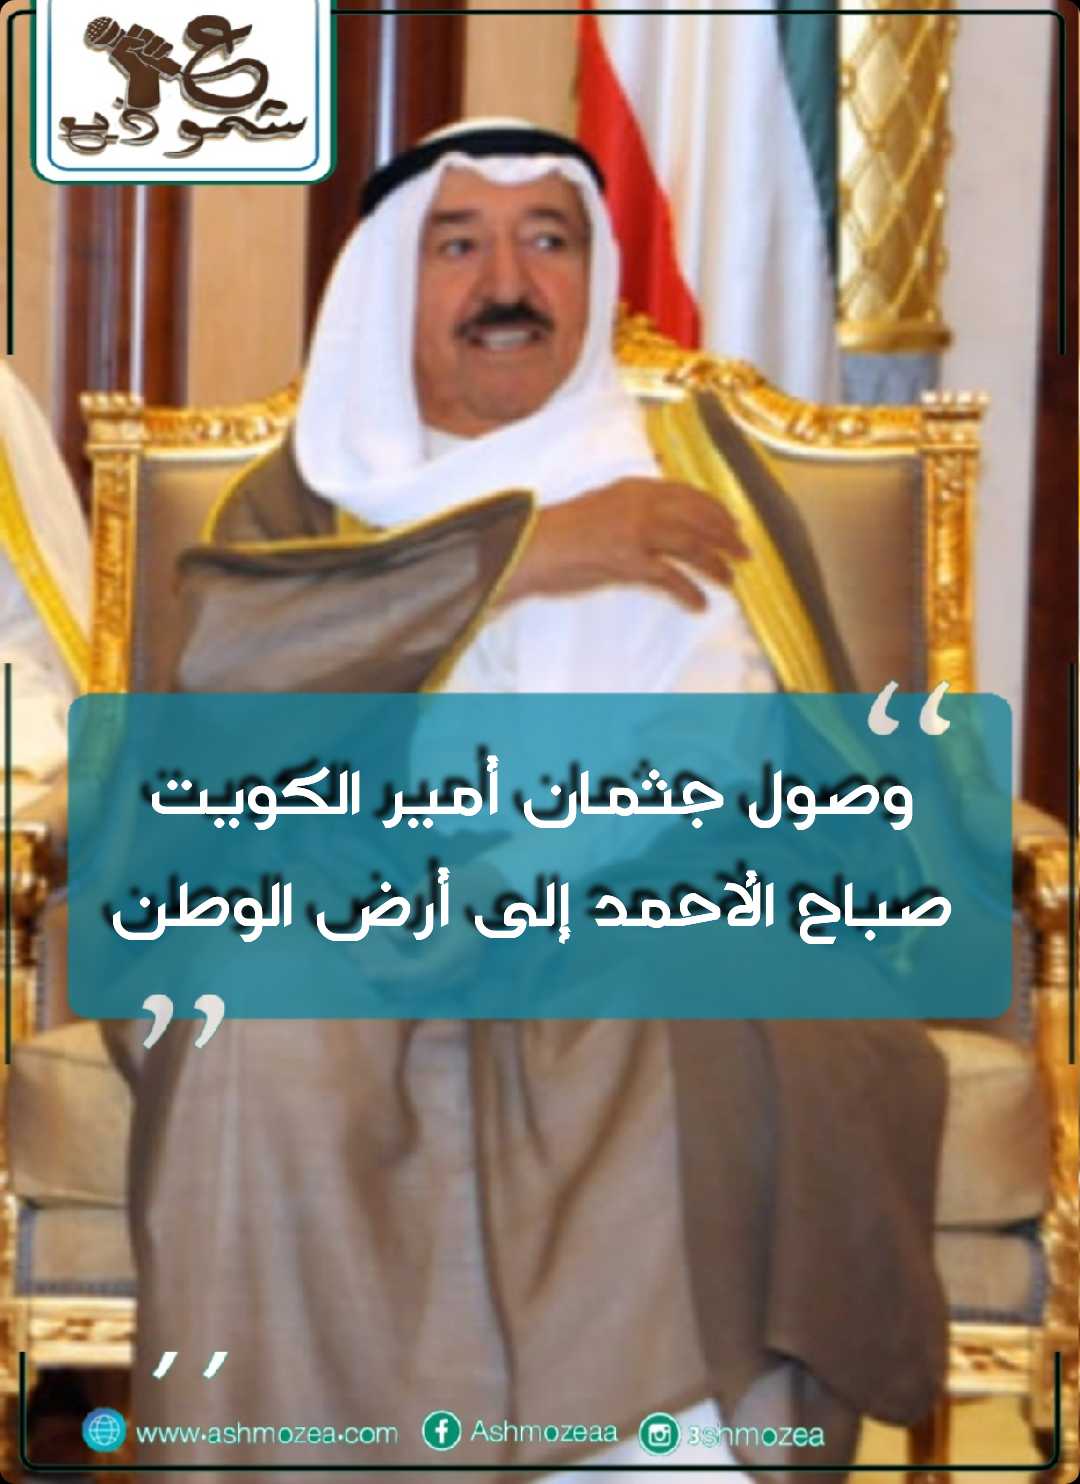 وصول جثمان أمير الكويت صباح الأحمد إلى أرض الوطن.